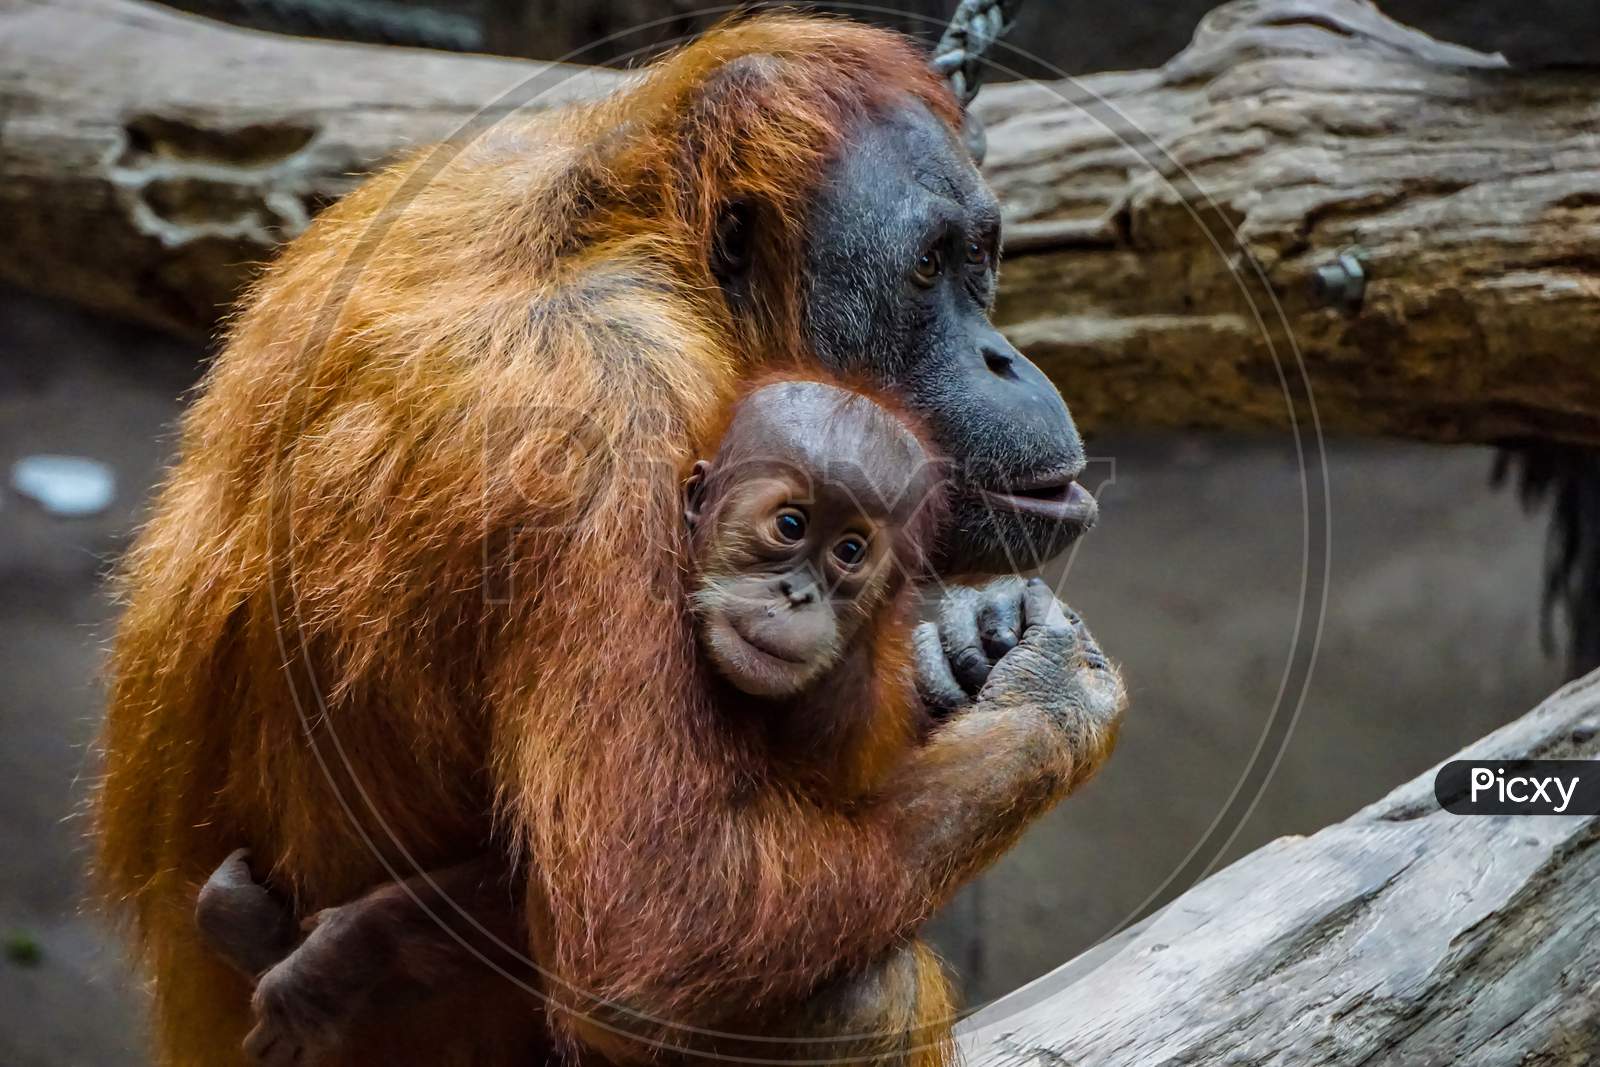 Big Giant Goriila Monkey With His Baby Monkey In The Zoo